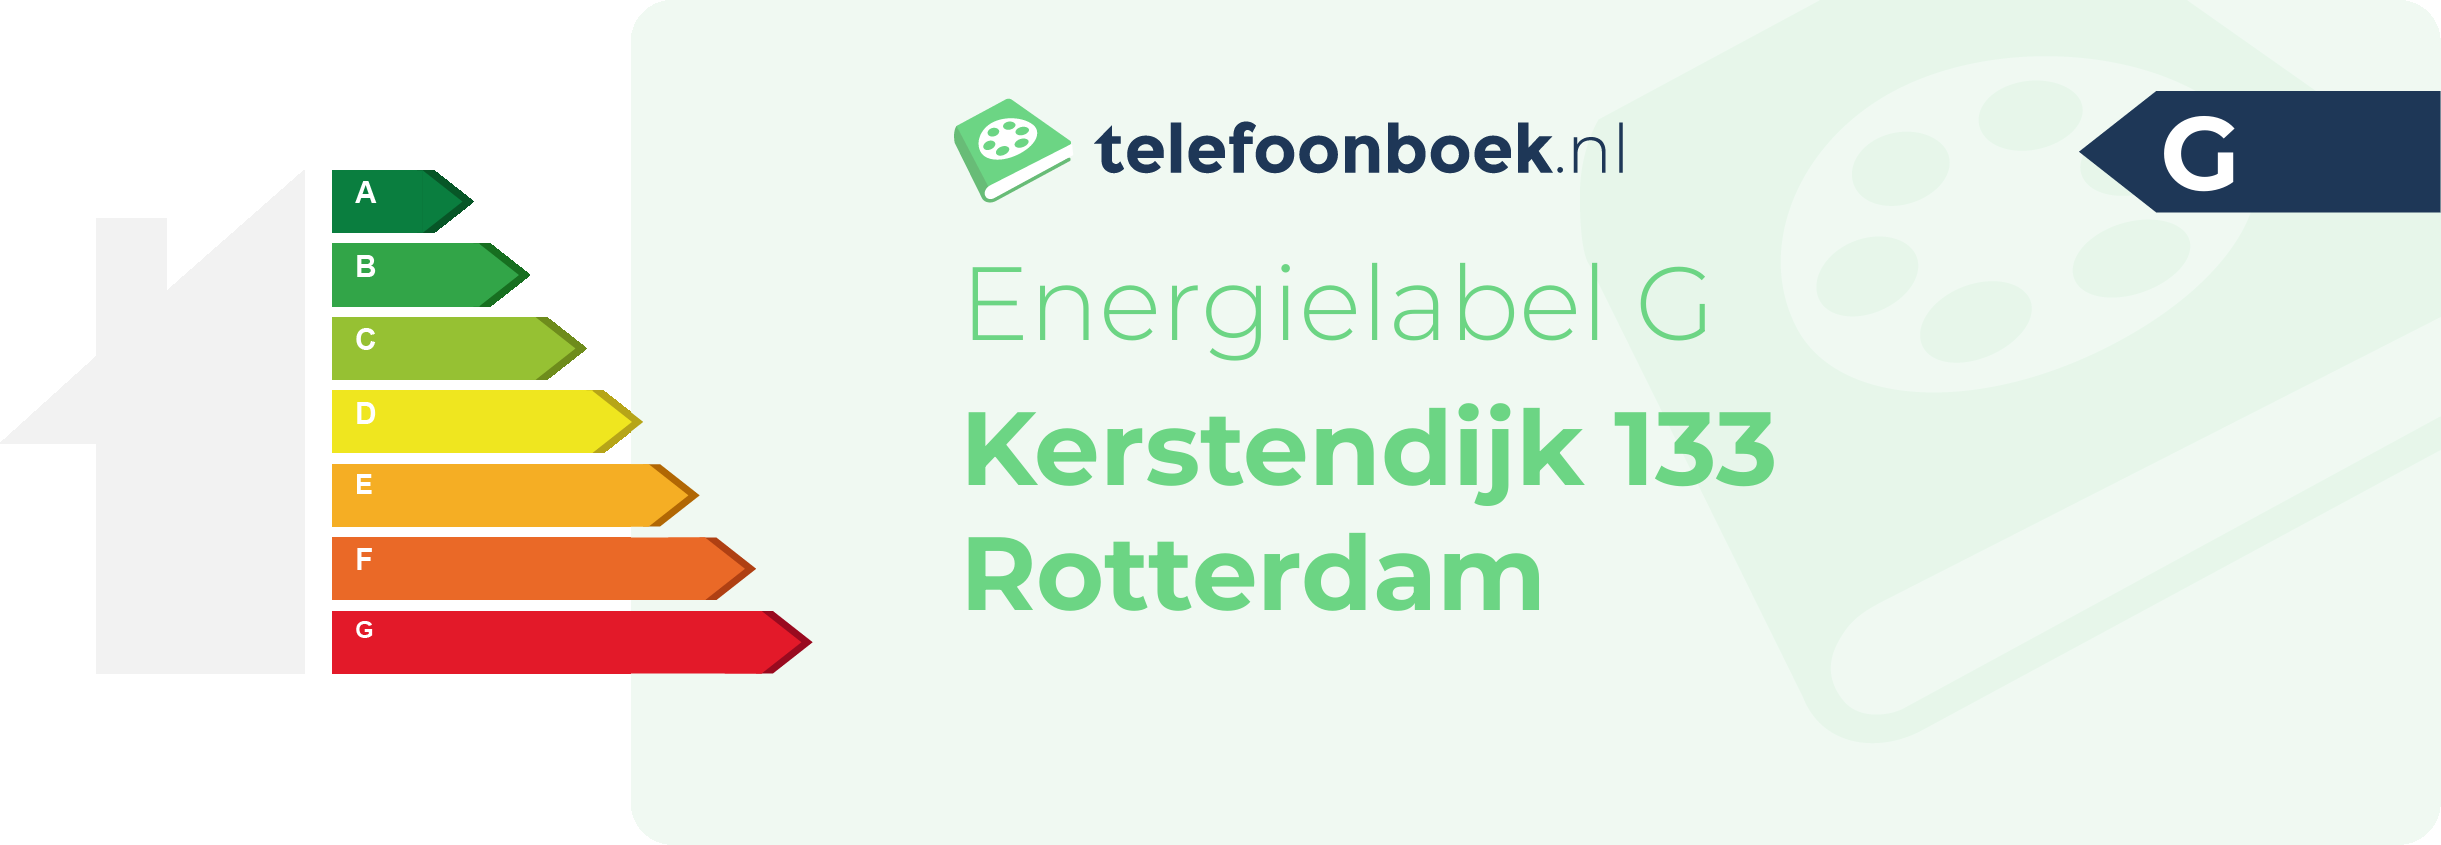 Energielabel Kerstendijk 133 Rotterdam